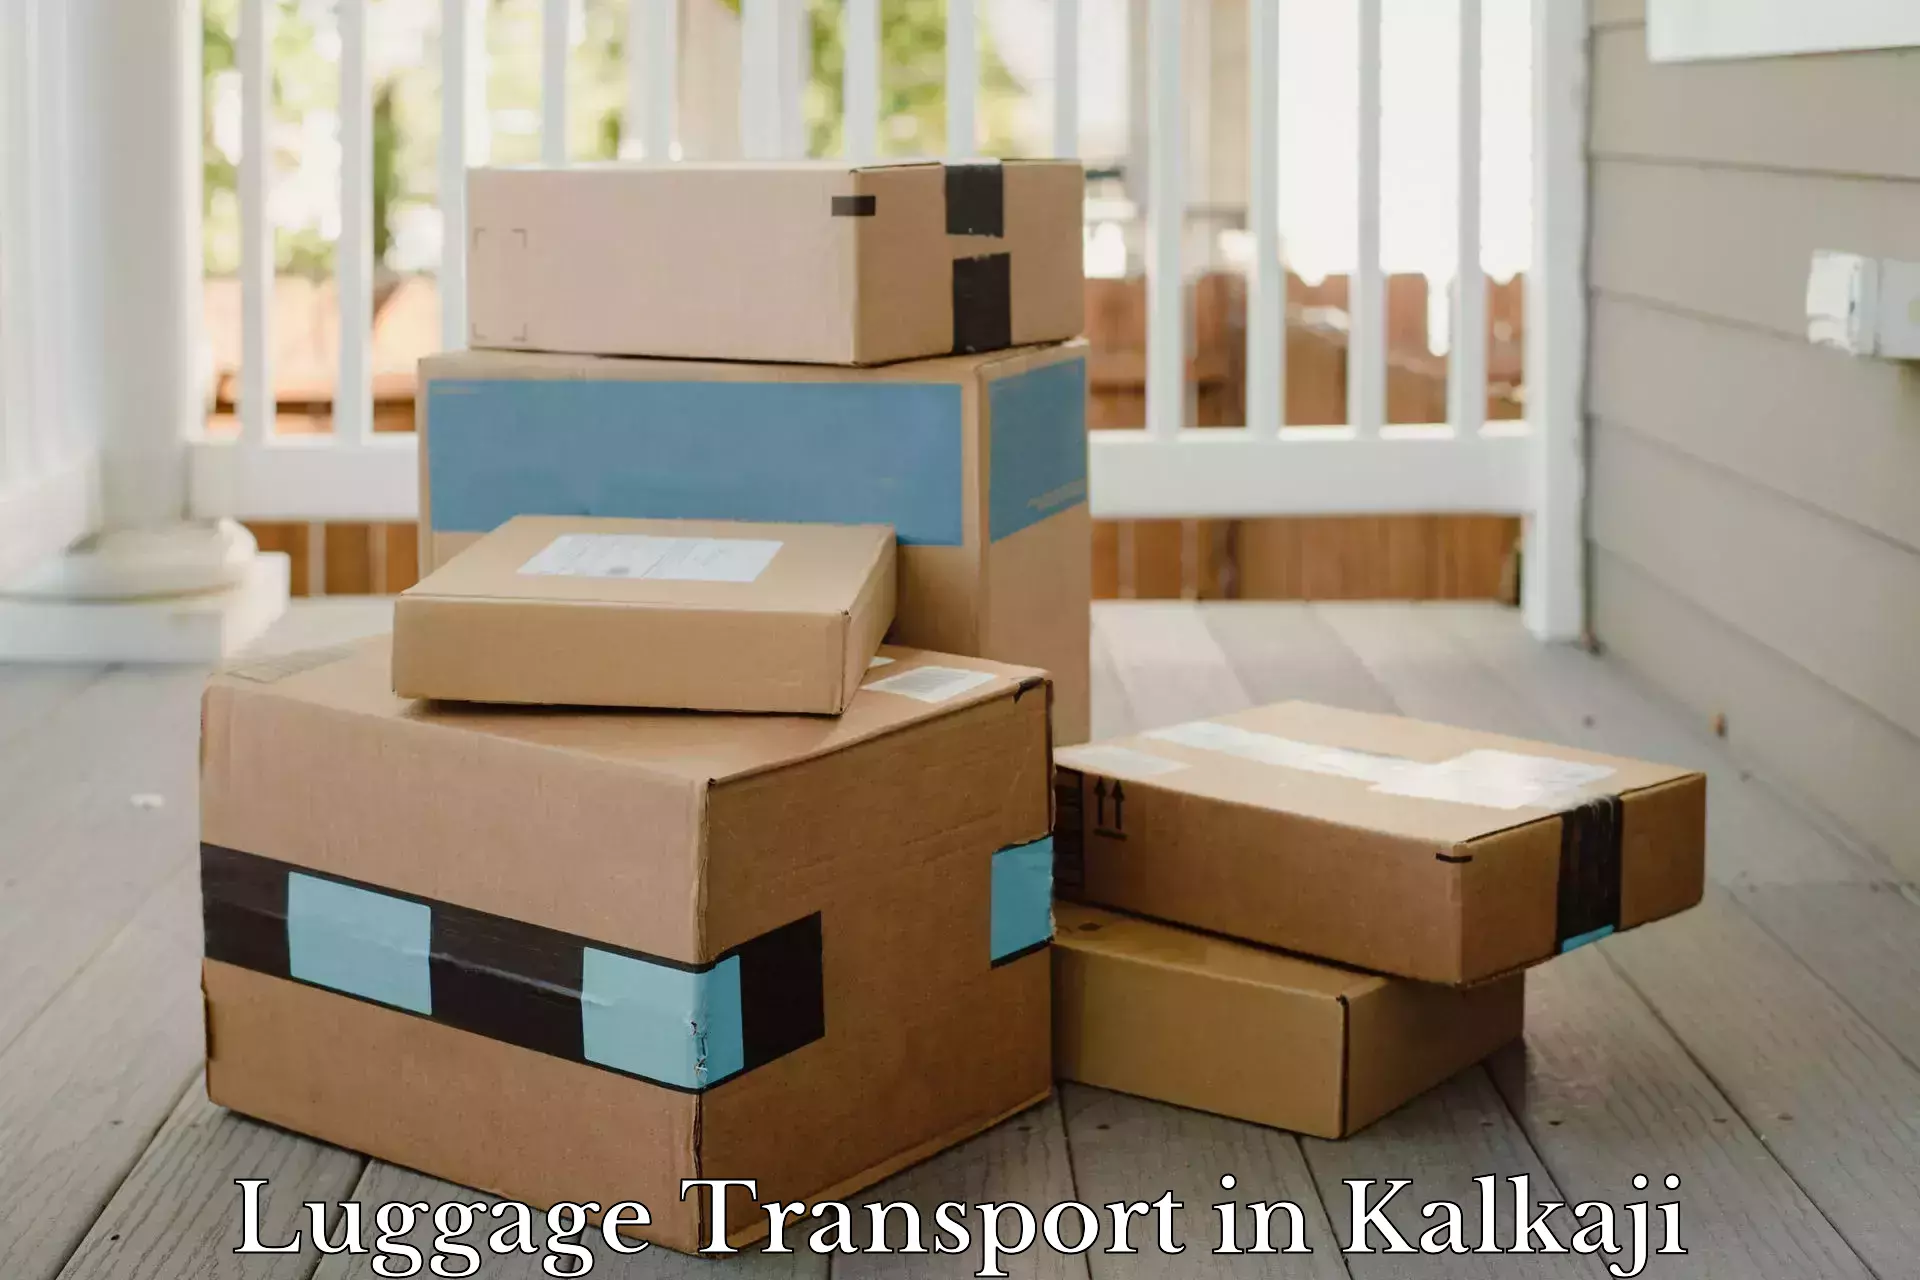 Baggage delivery support in Kalkaji